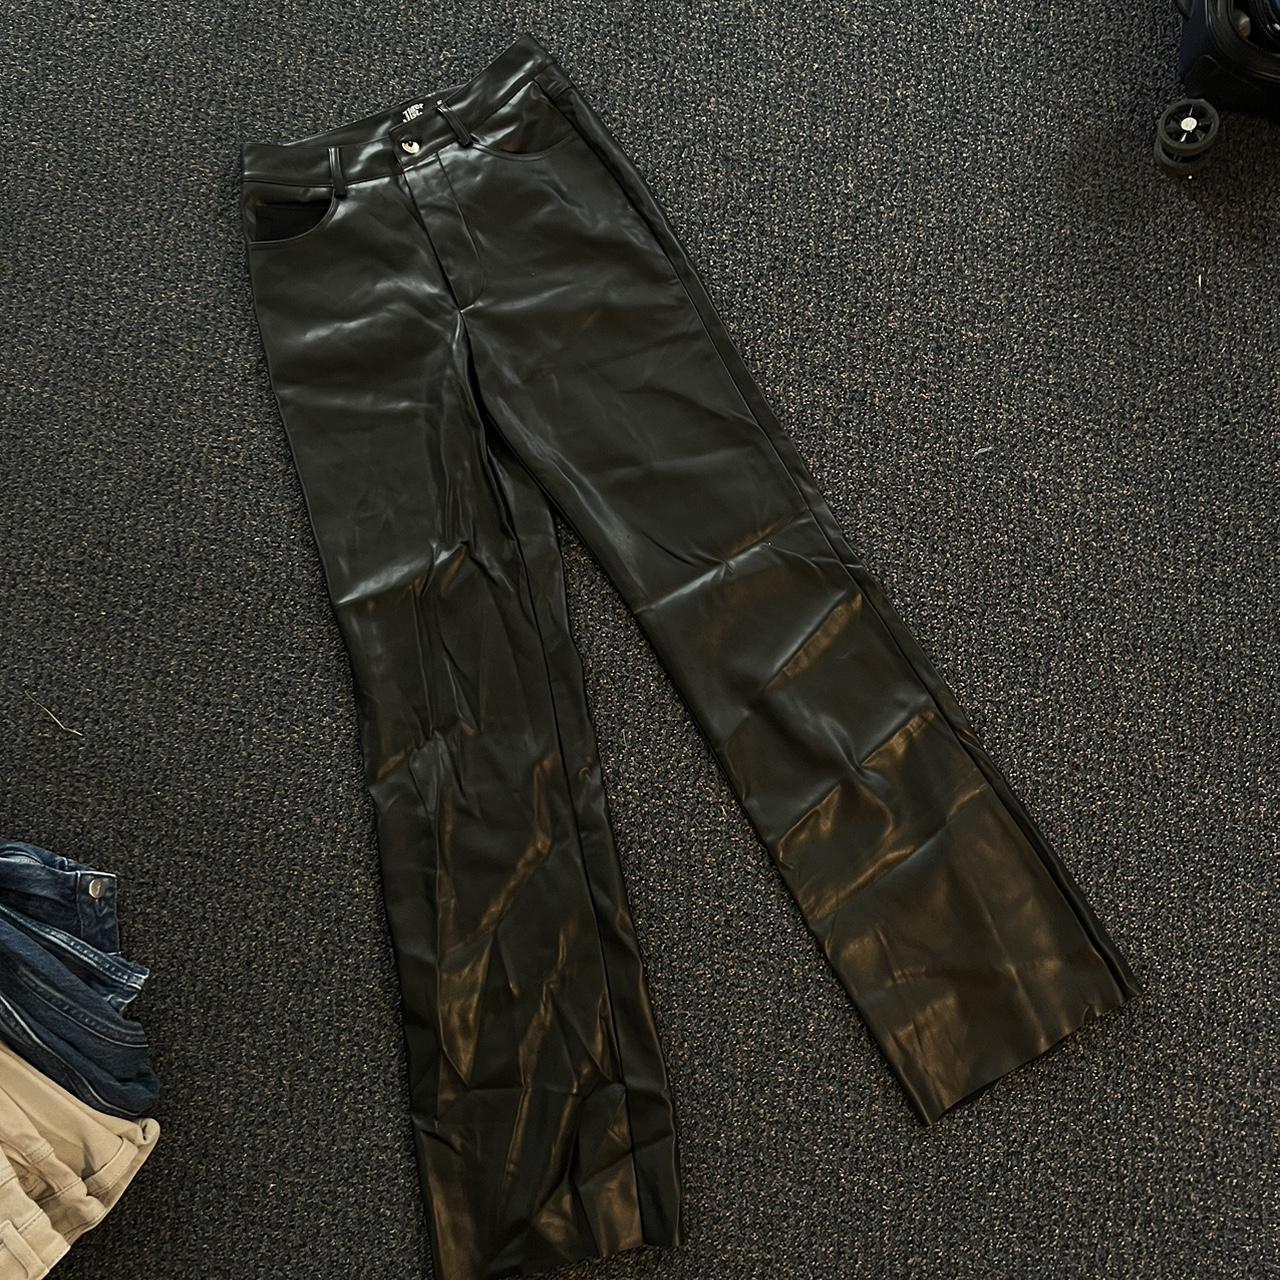 Tiger Mist pocket detail cargo pants in black